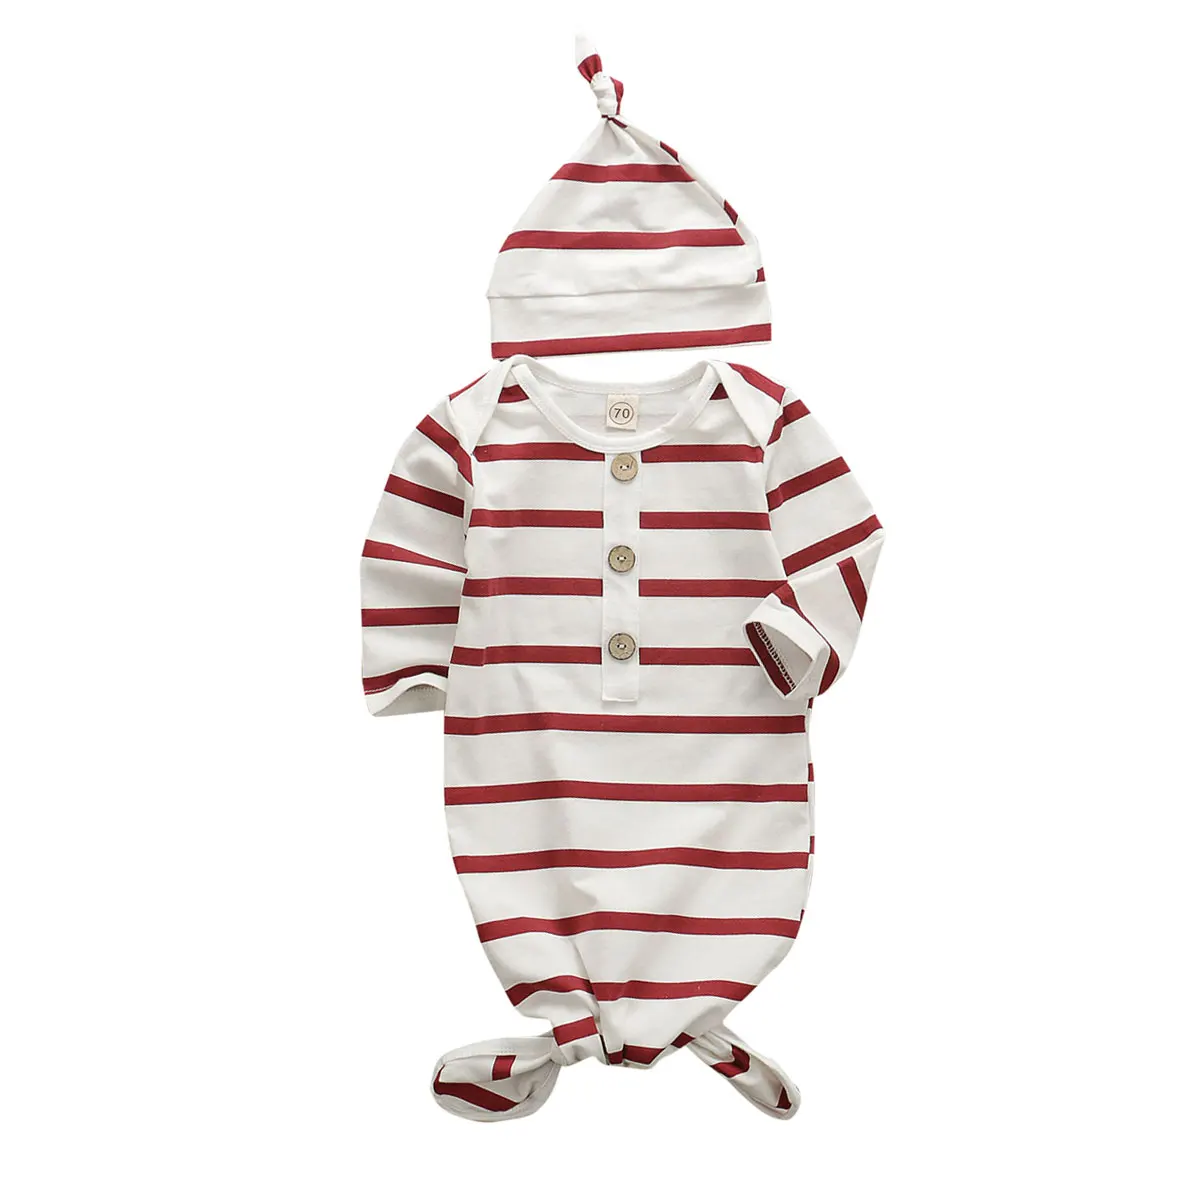 0-6M младенец новорожденный мальчик для пеленания девочек Обернуть Одеяло спальный мешок красный белый полосатый